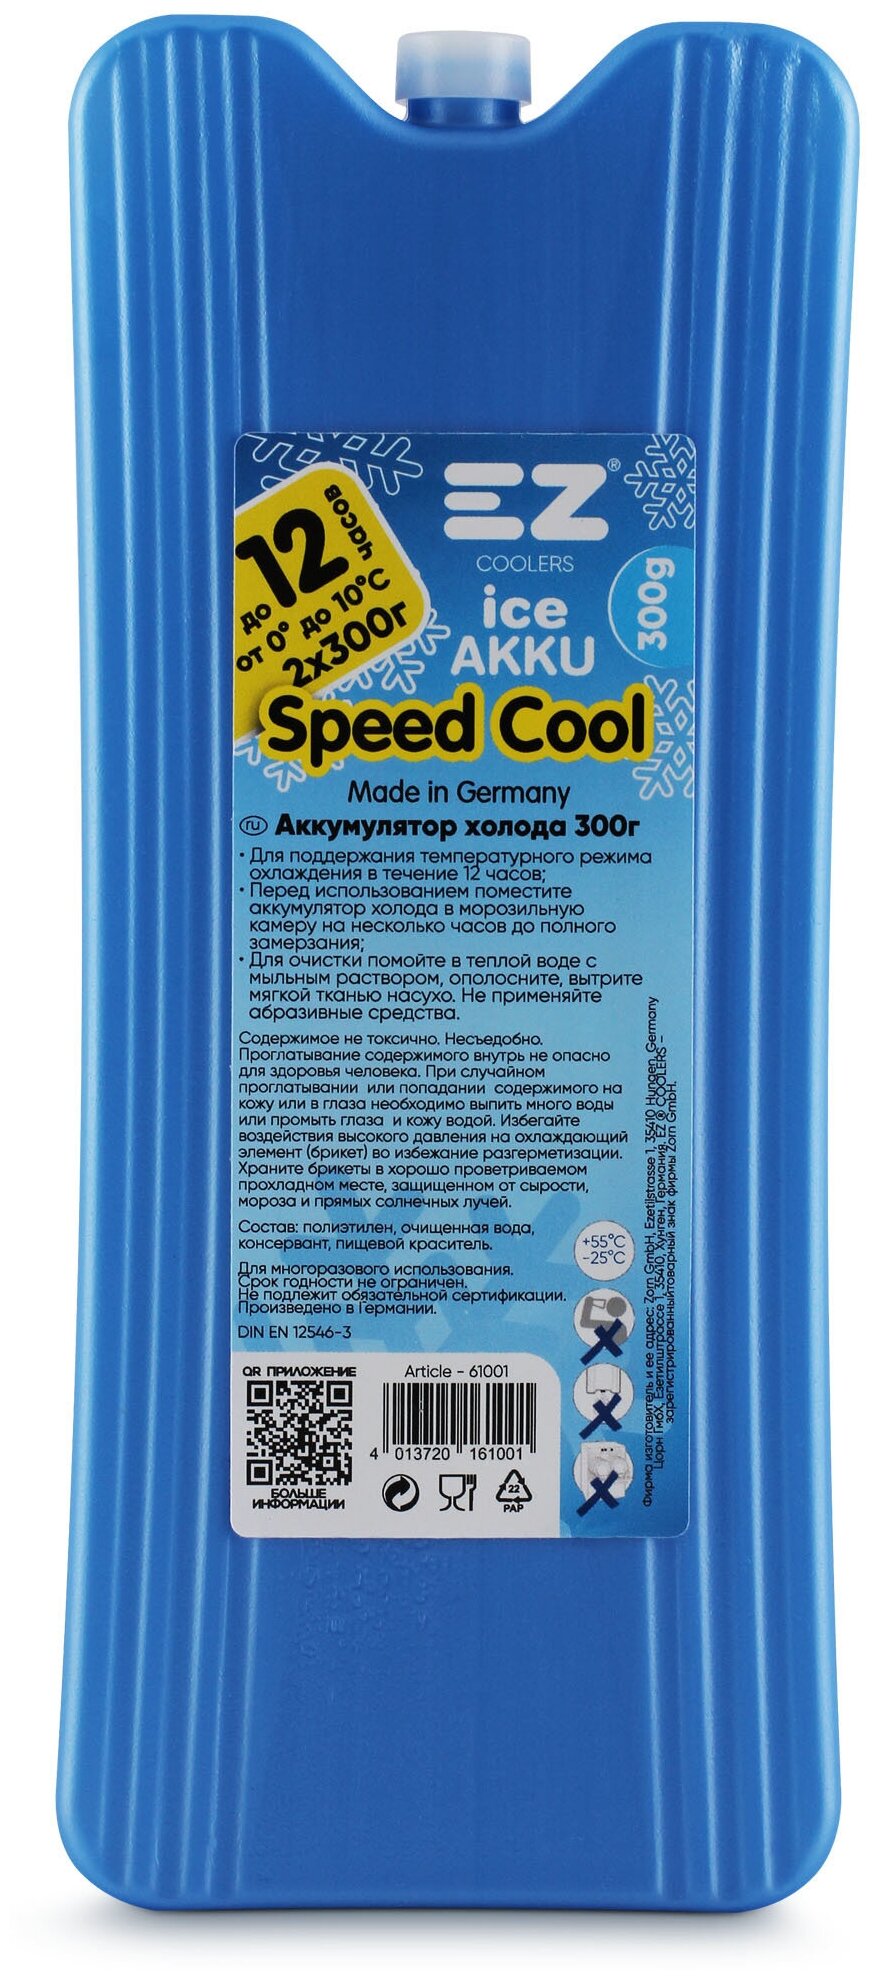 Аккумулятор холода EZ Coolers Ice Akku 300g, 1шт